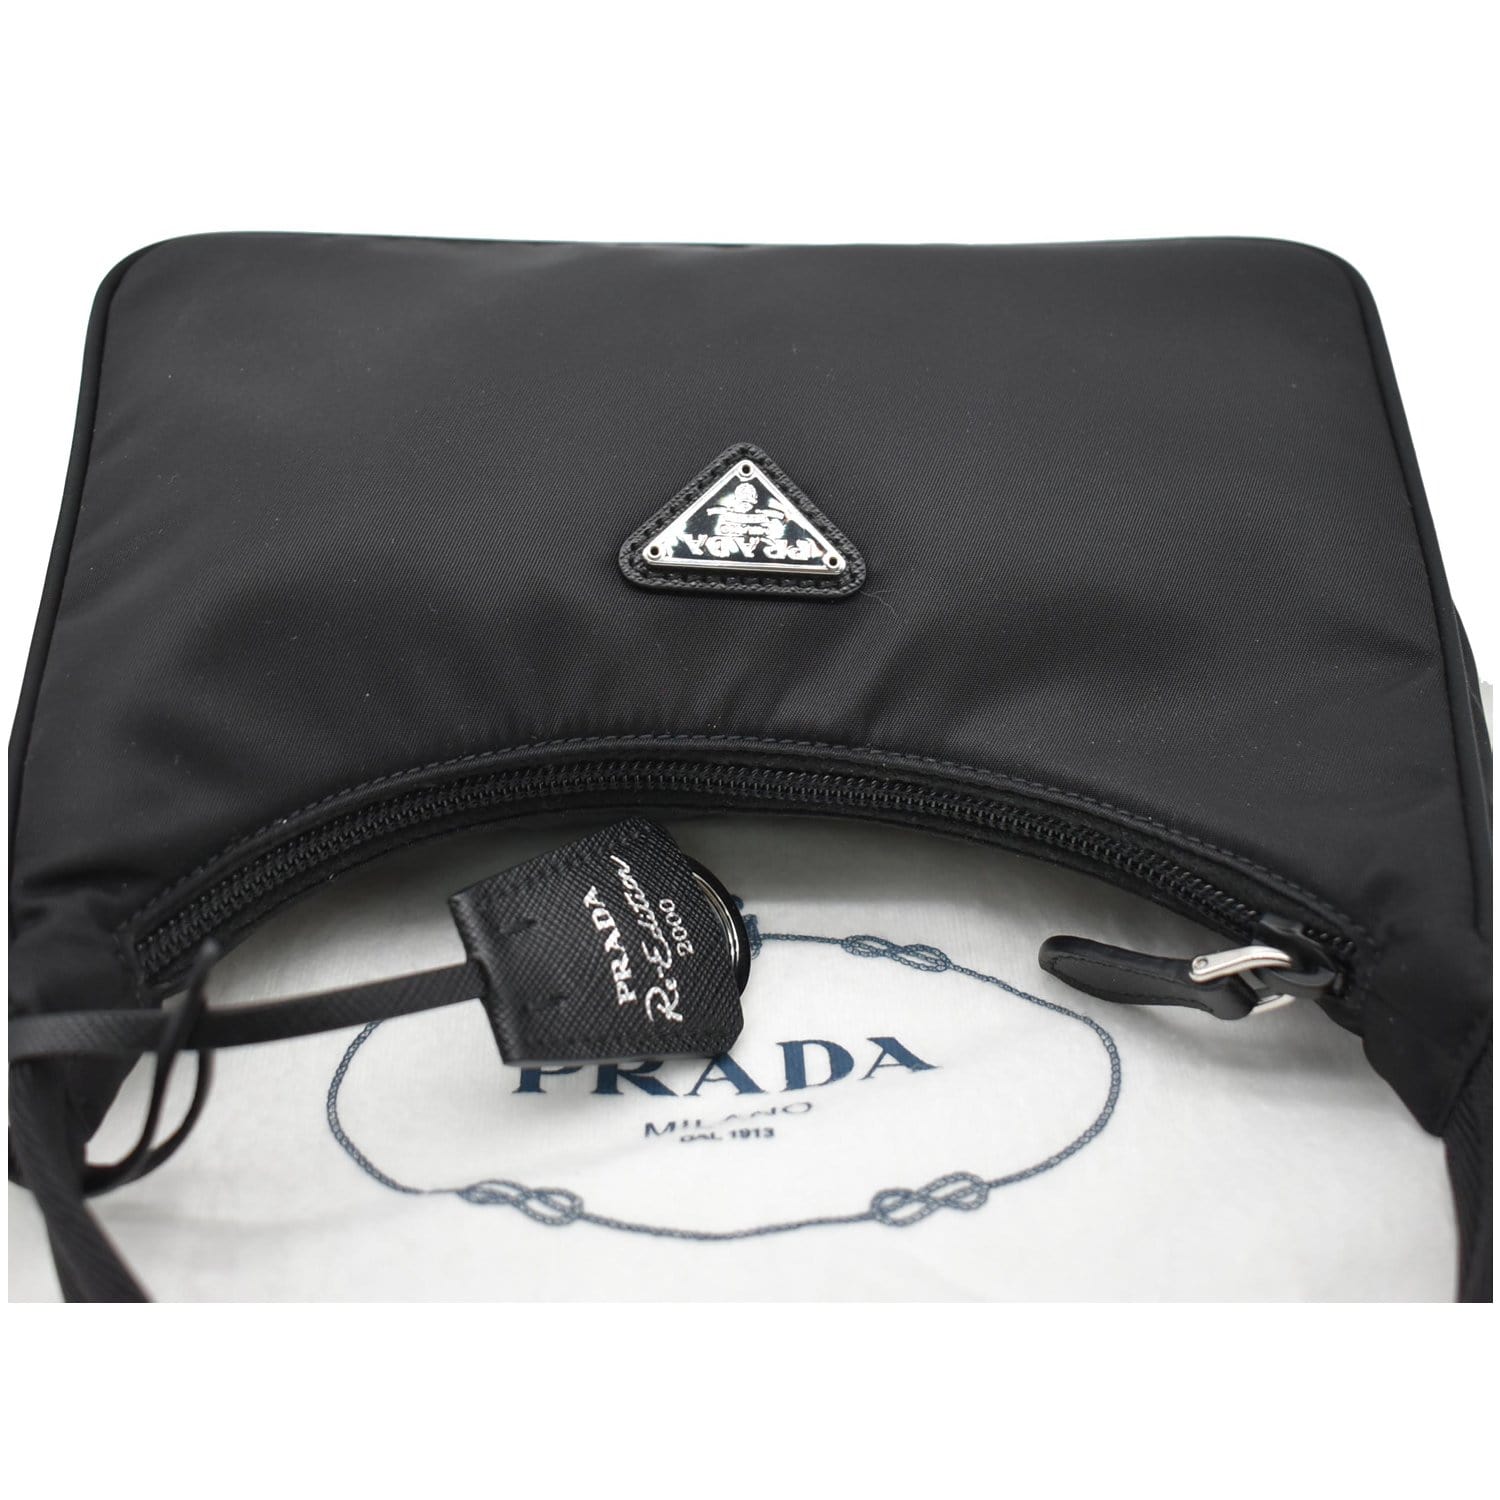 Prada Re-nylon Re-edition 2000 Mini-bag in Black